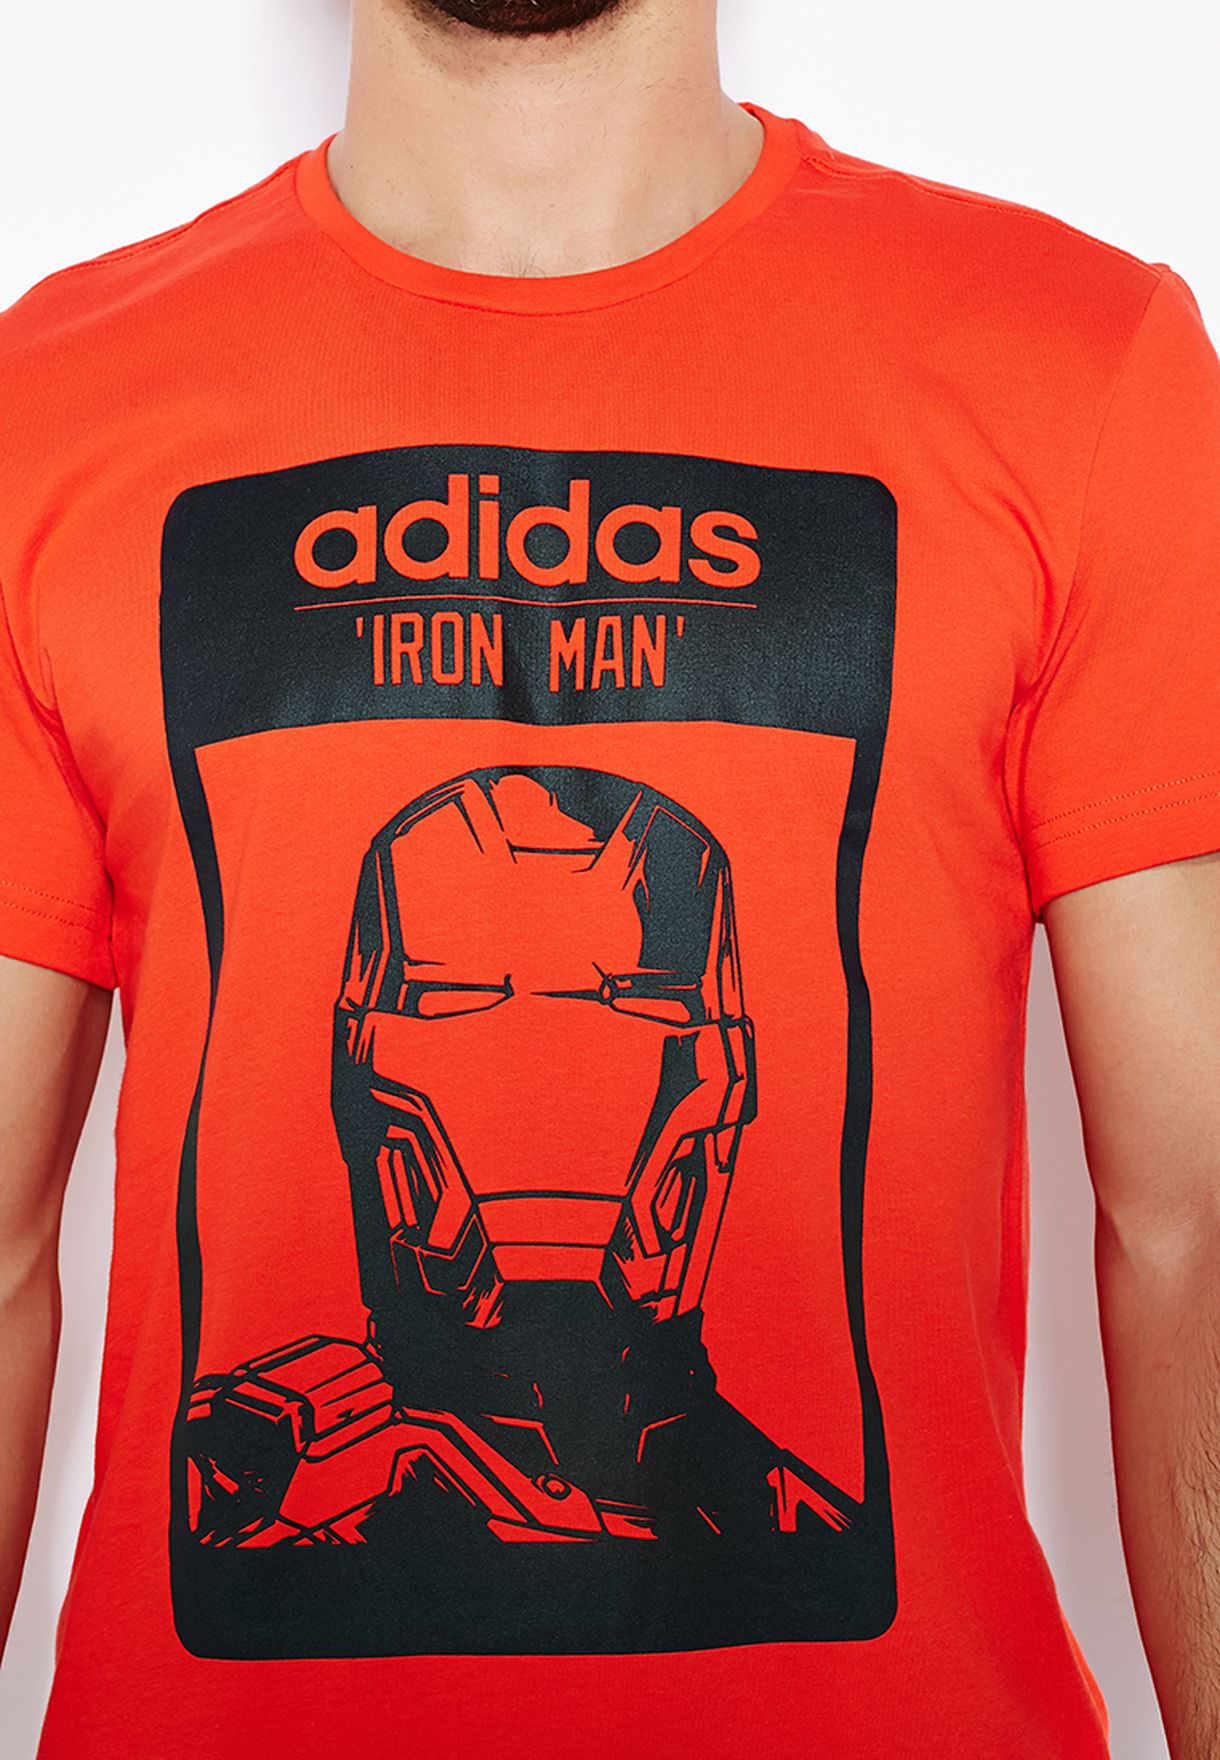 iron man adidas shirt